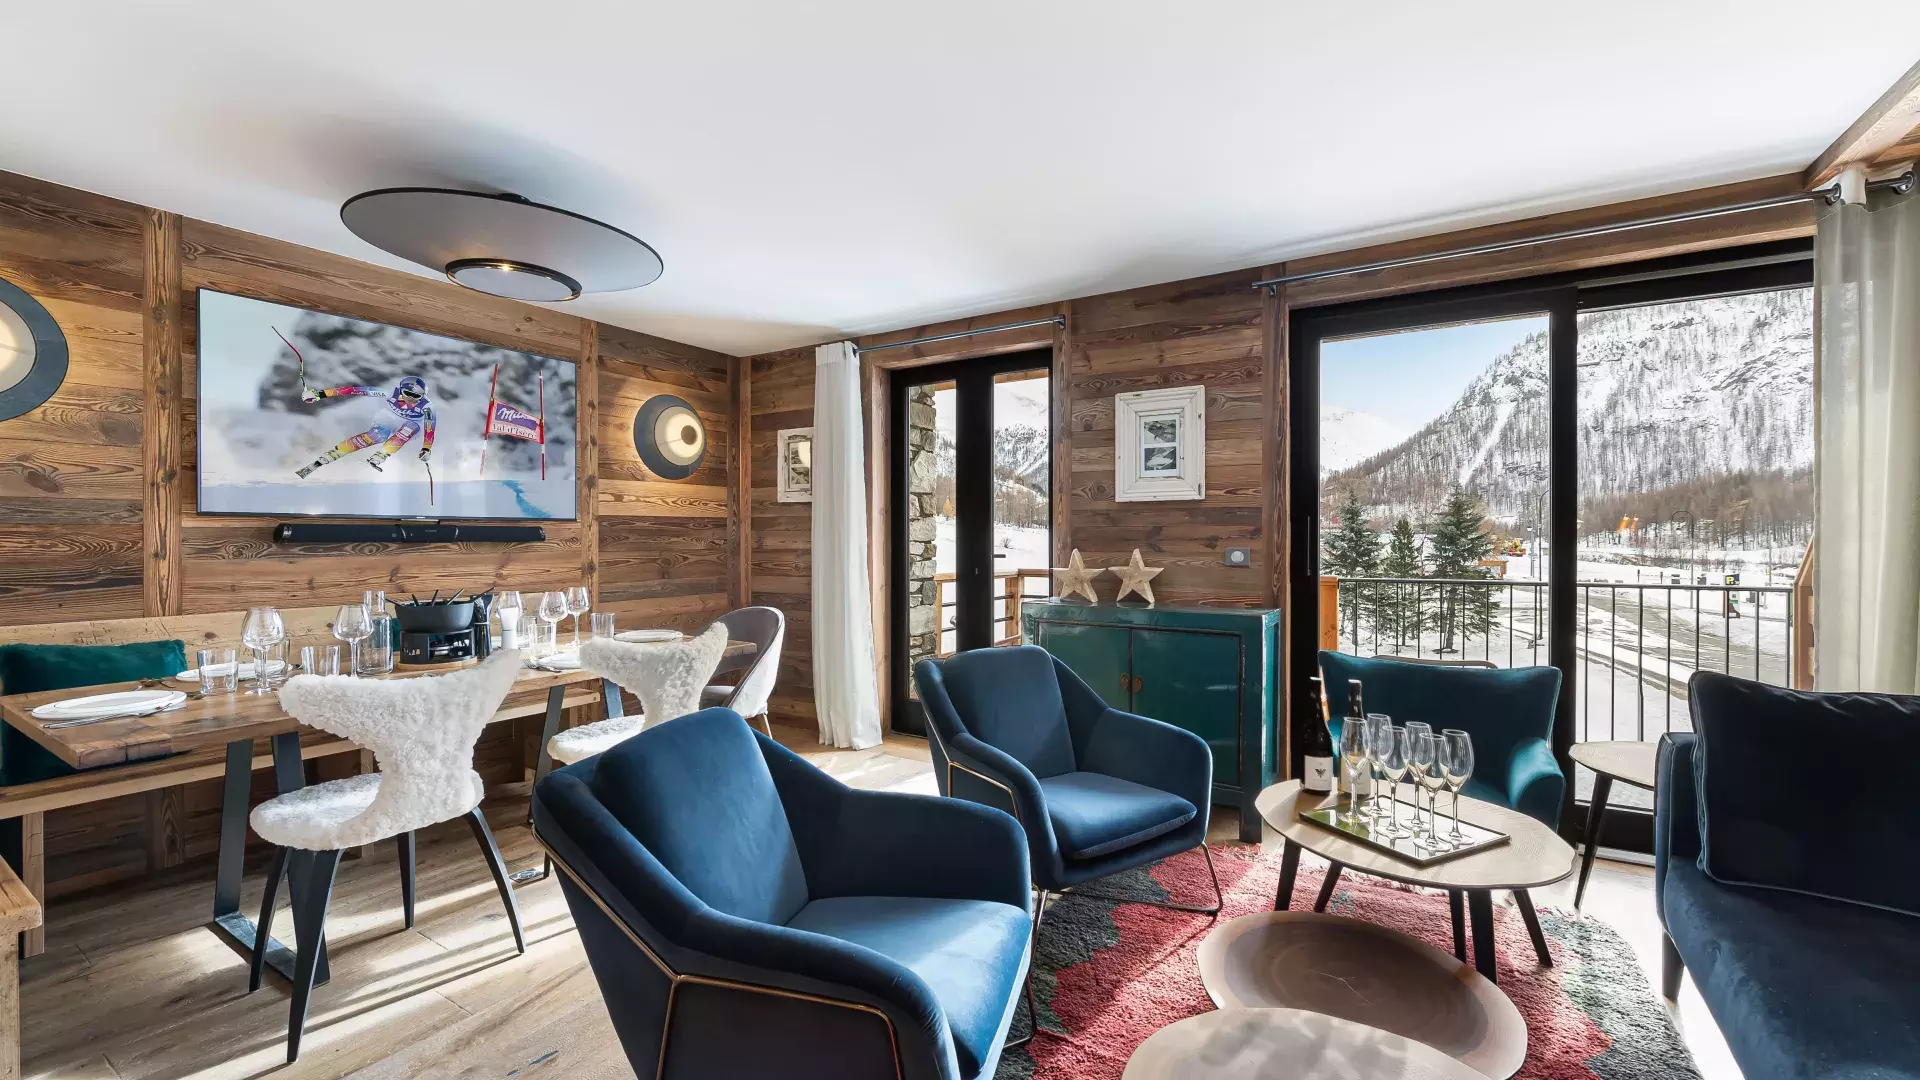 Appartement Etoile 1 - Location chalets Covarel - Val d'Isère Alpes - France - Salon